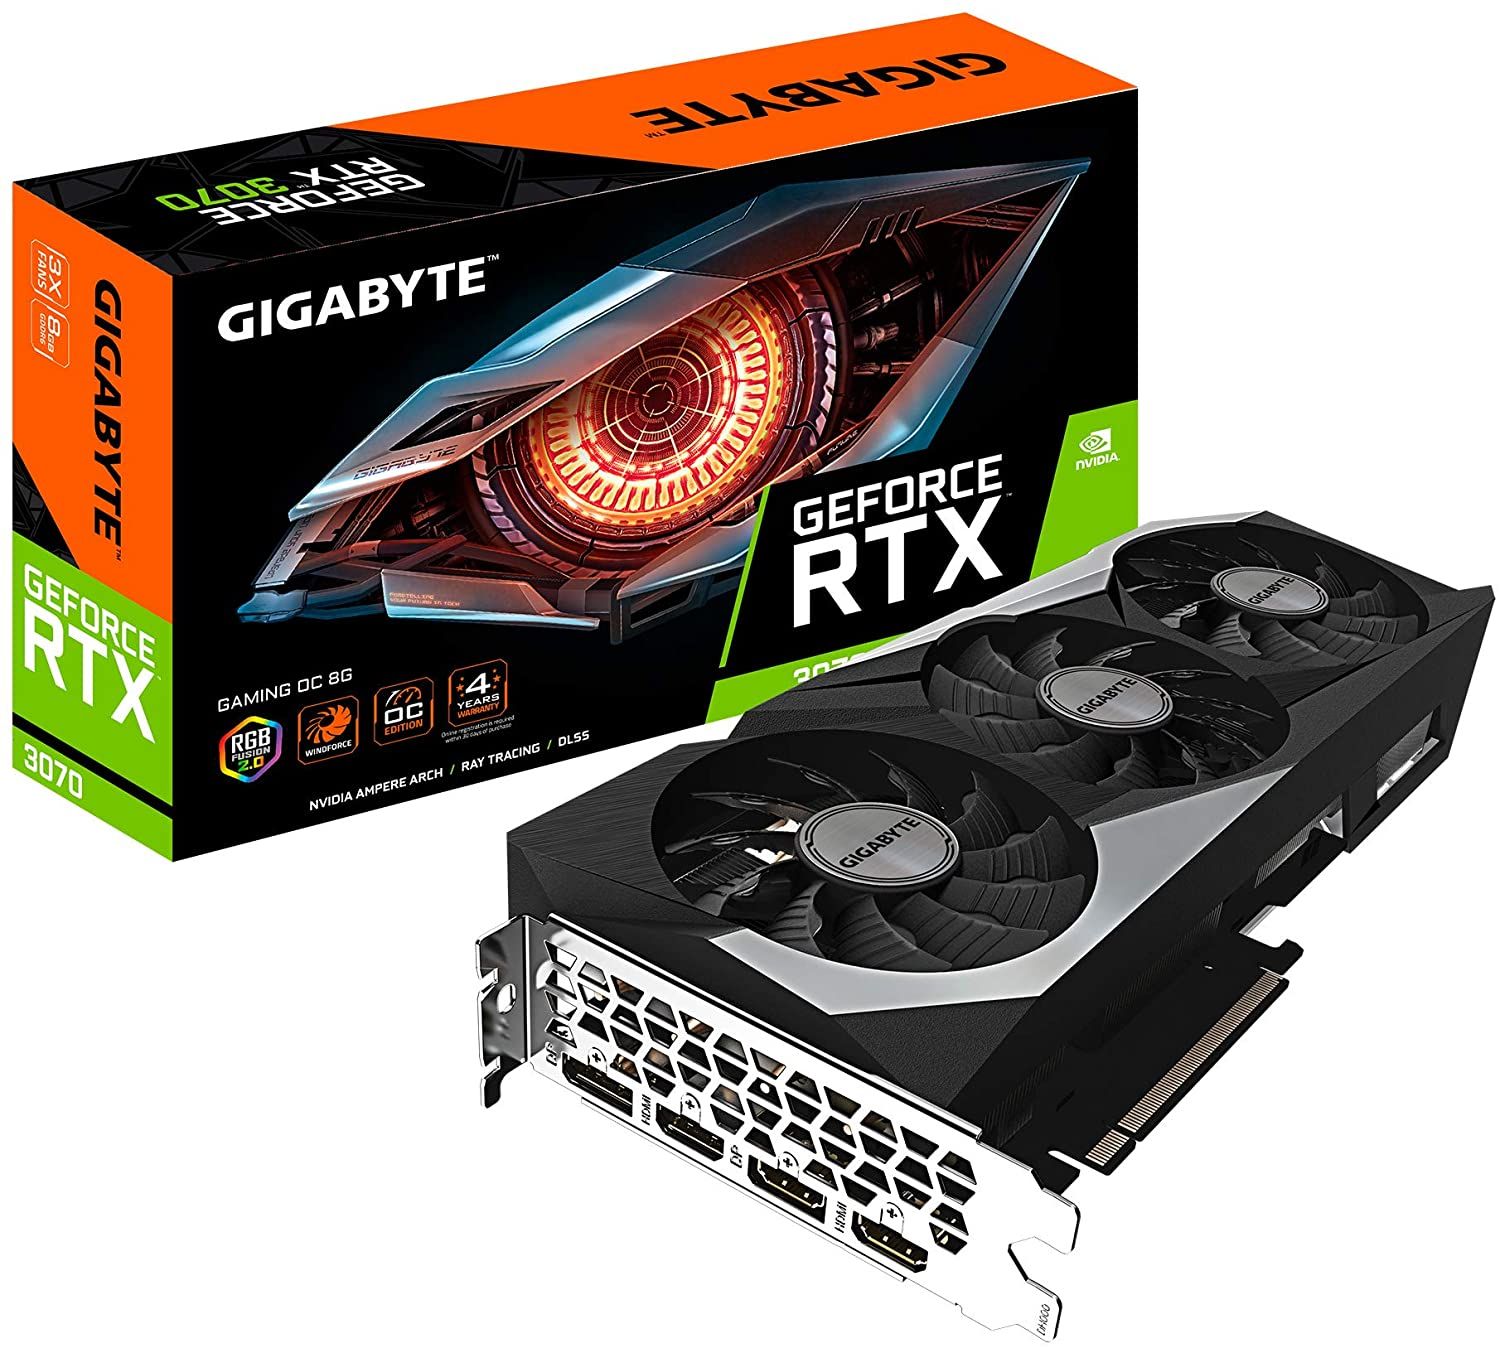 Gigabyte GeForce RTX 3070 GAMING OC 8G (rev. 2.0) NVIDIA 8 GB GDDR6_1